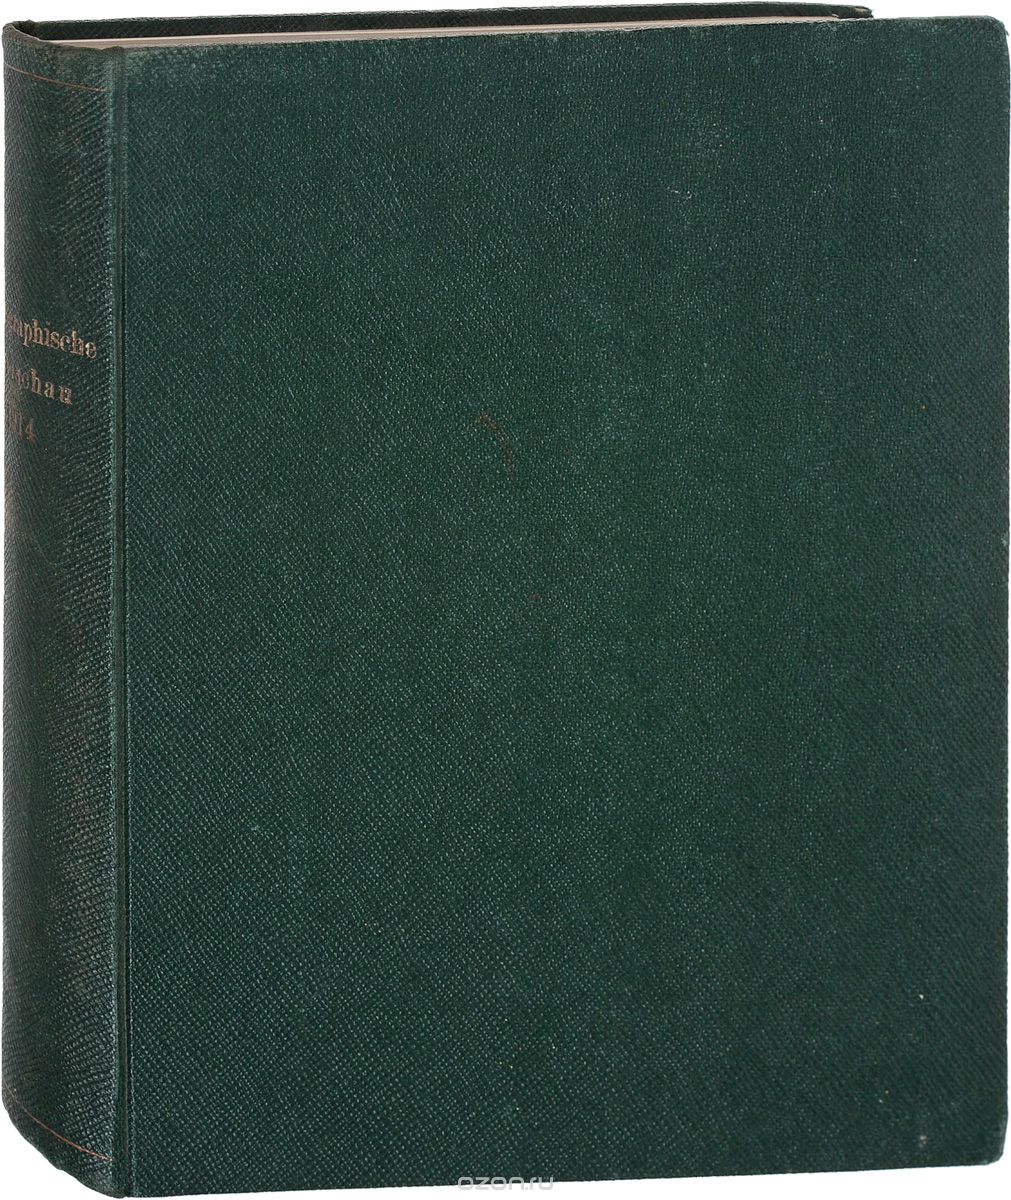 Photographische Rundschau und Mitteilungen, №51, 1914